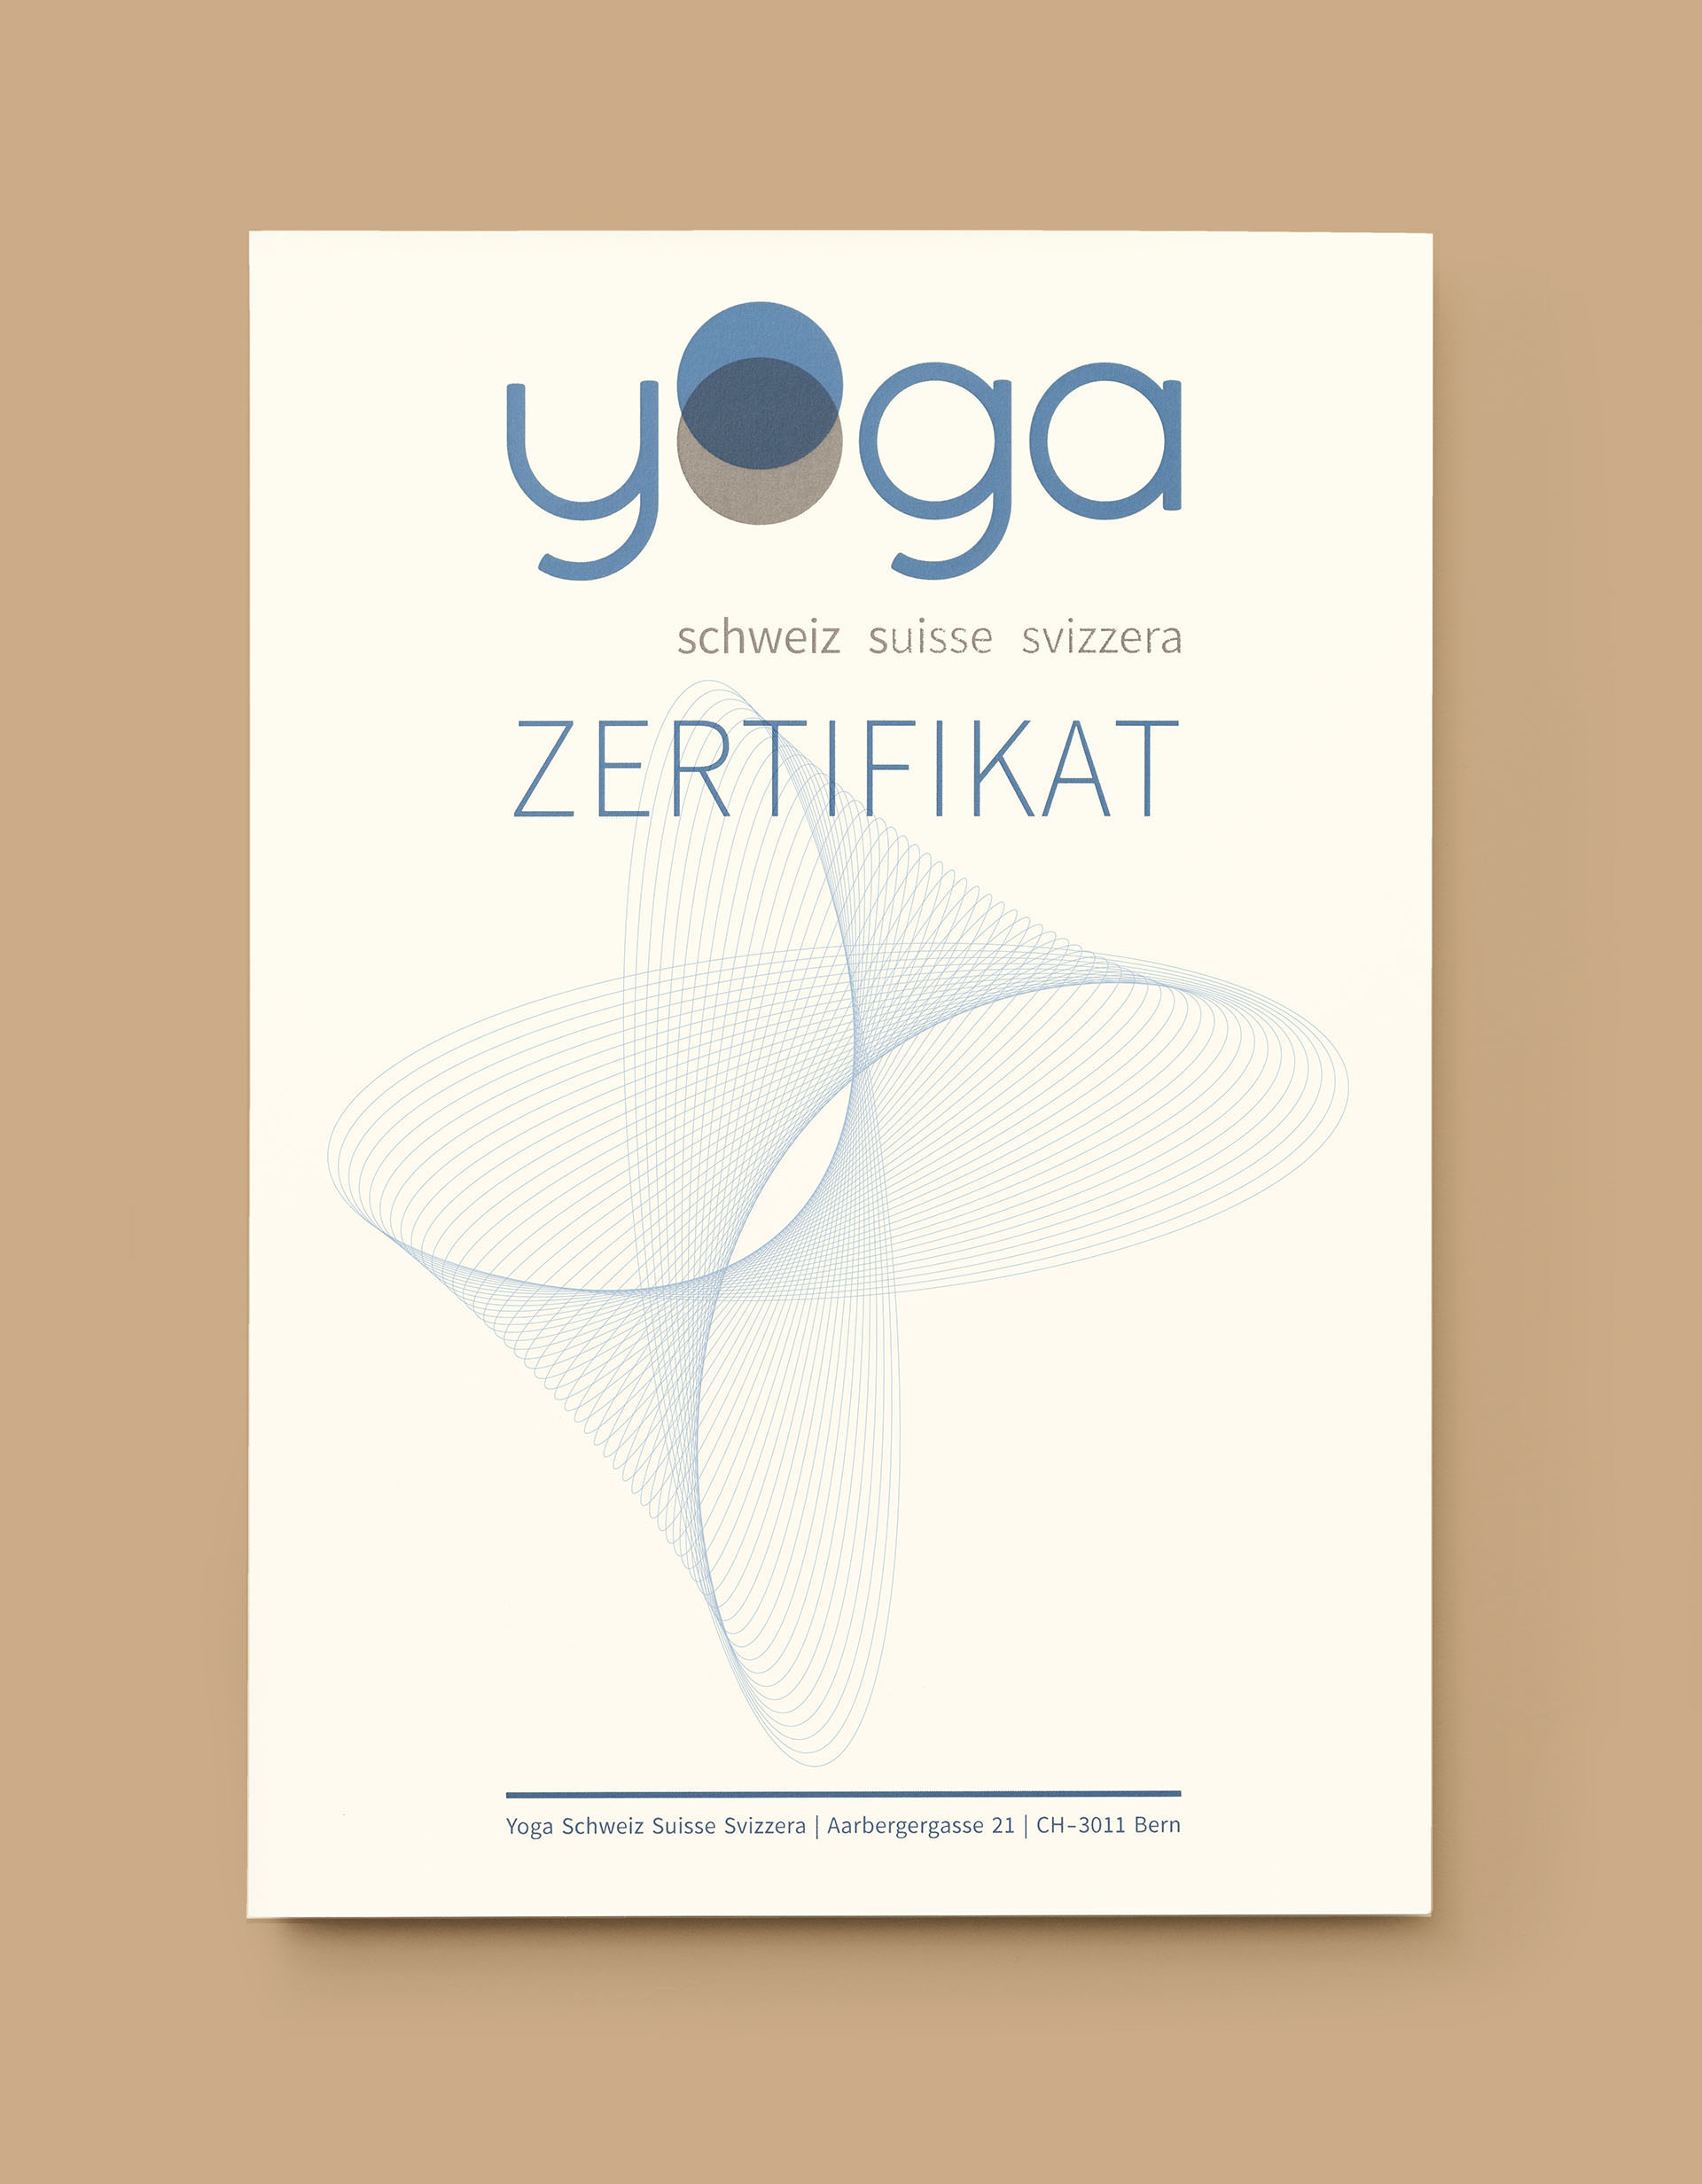 Yoga Schweiz Suisse Svizzera